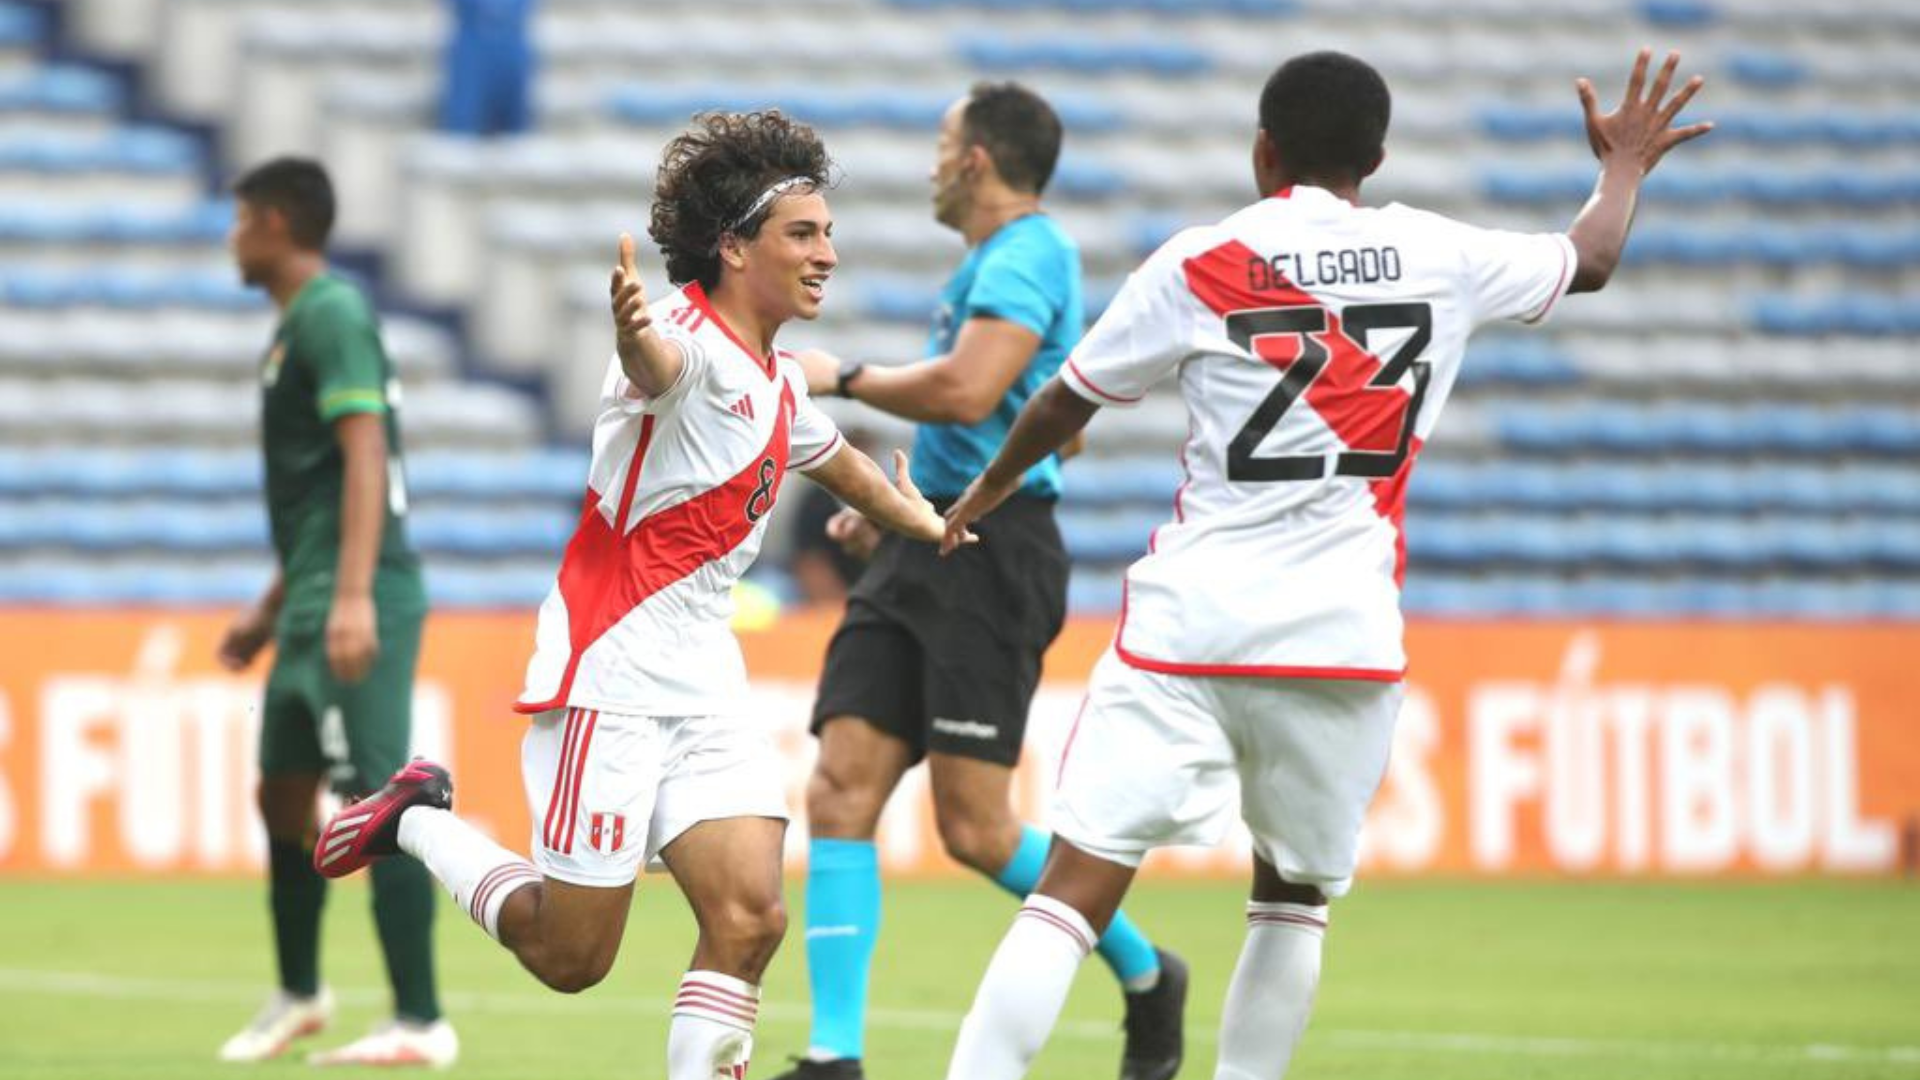 Golazo de Bassco Soyer tras contragolpe perfecto para el 1-0 de Perú vs Bolivia por Sudamericano sub 17